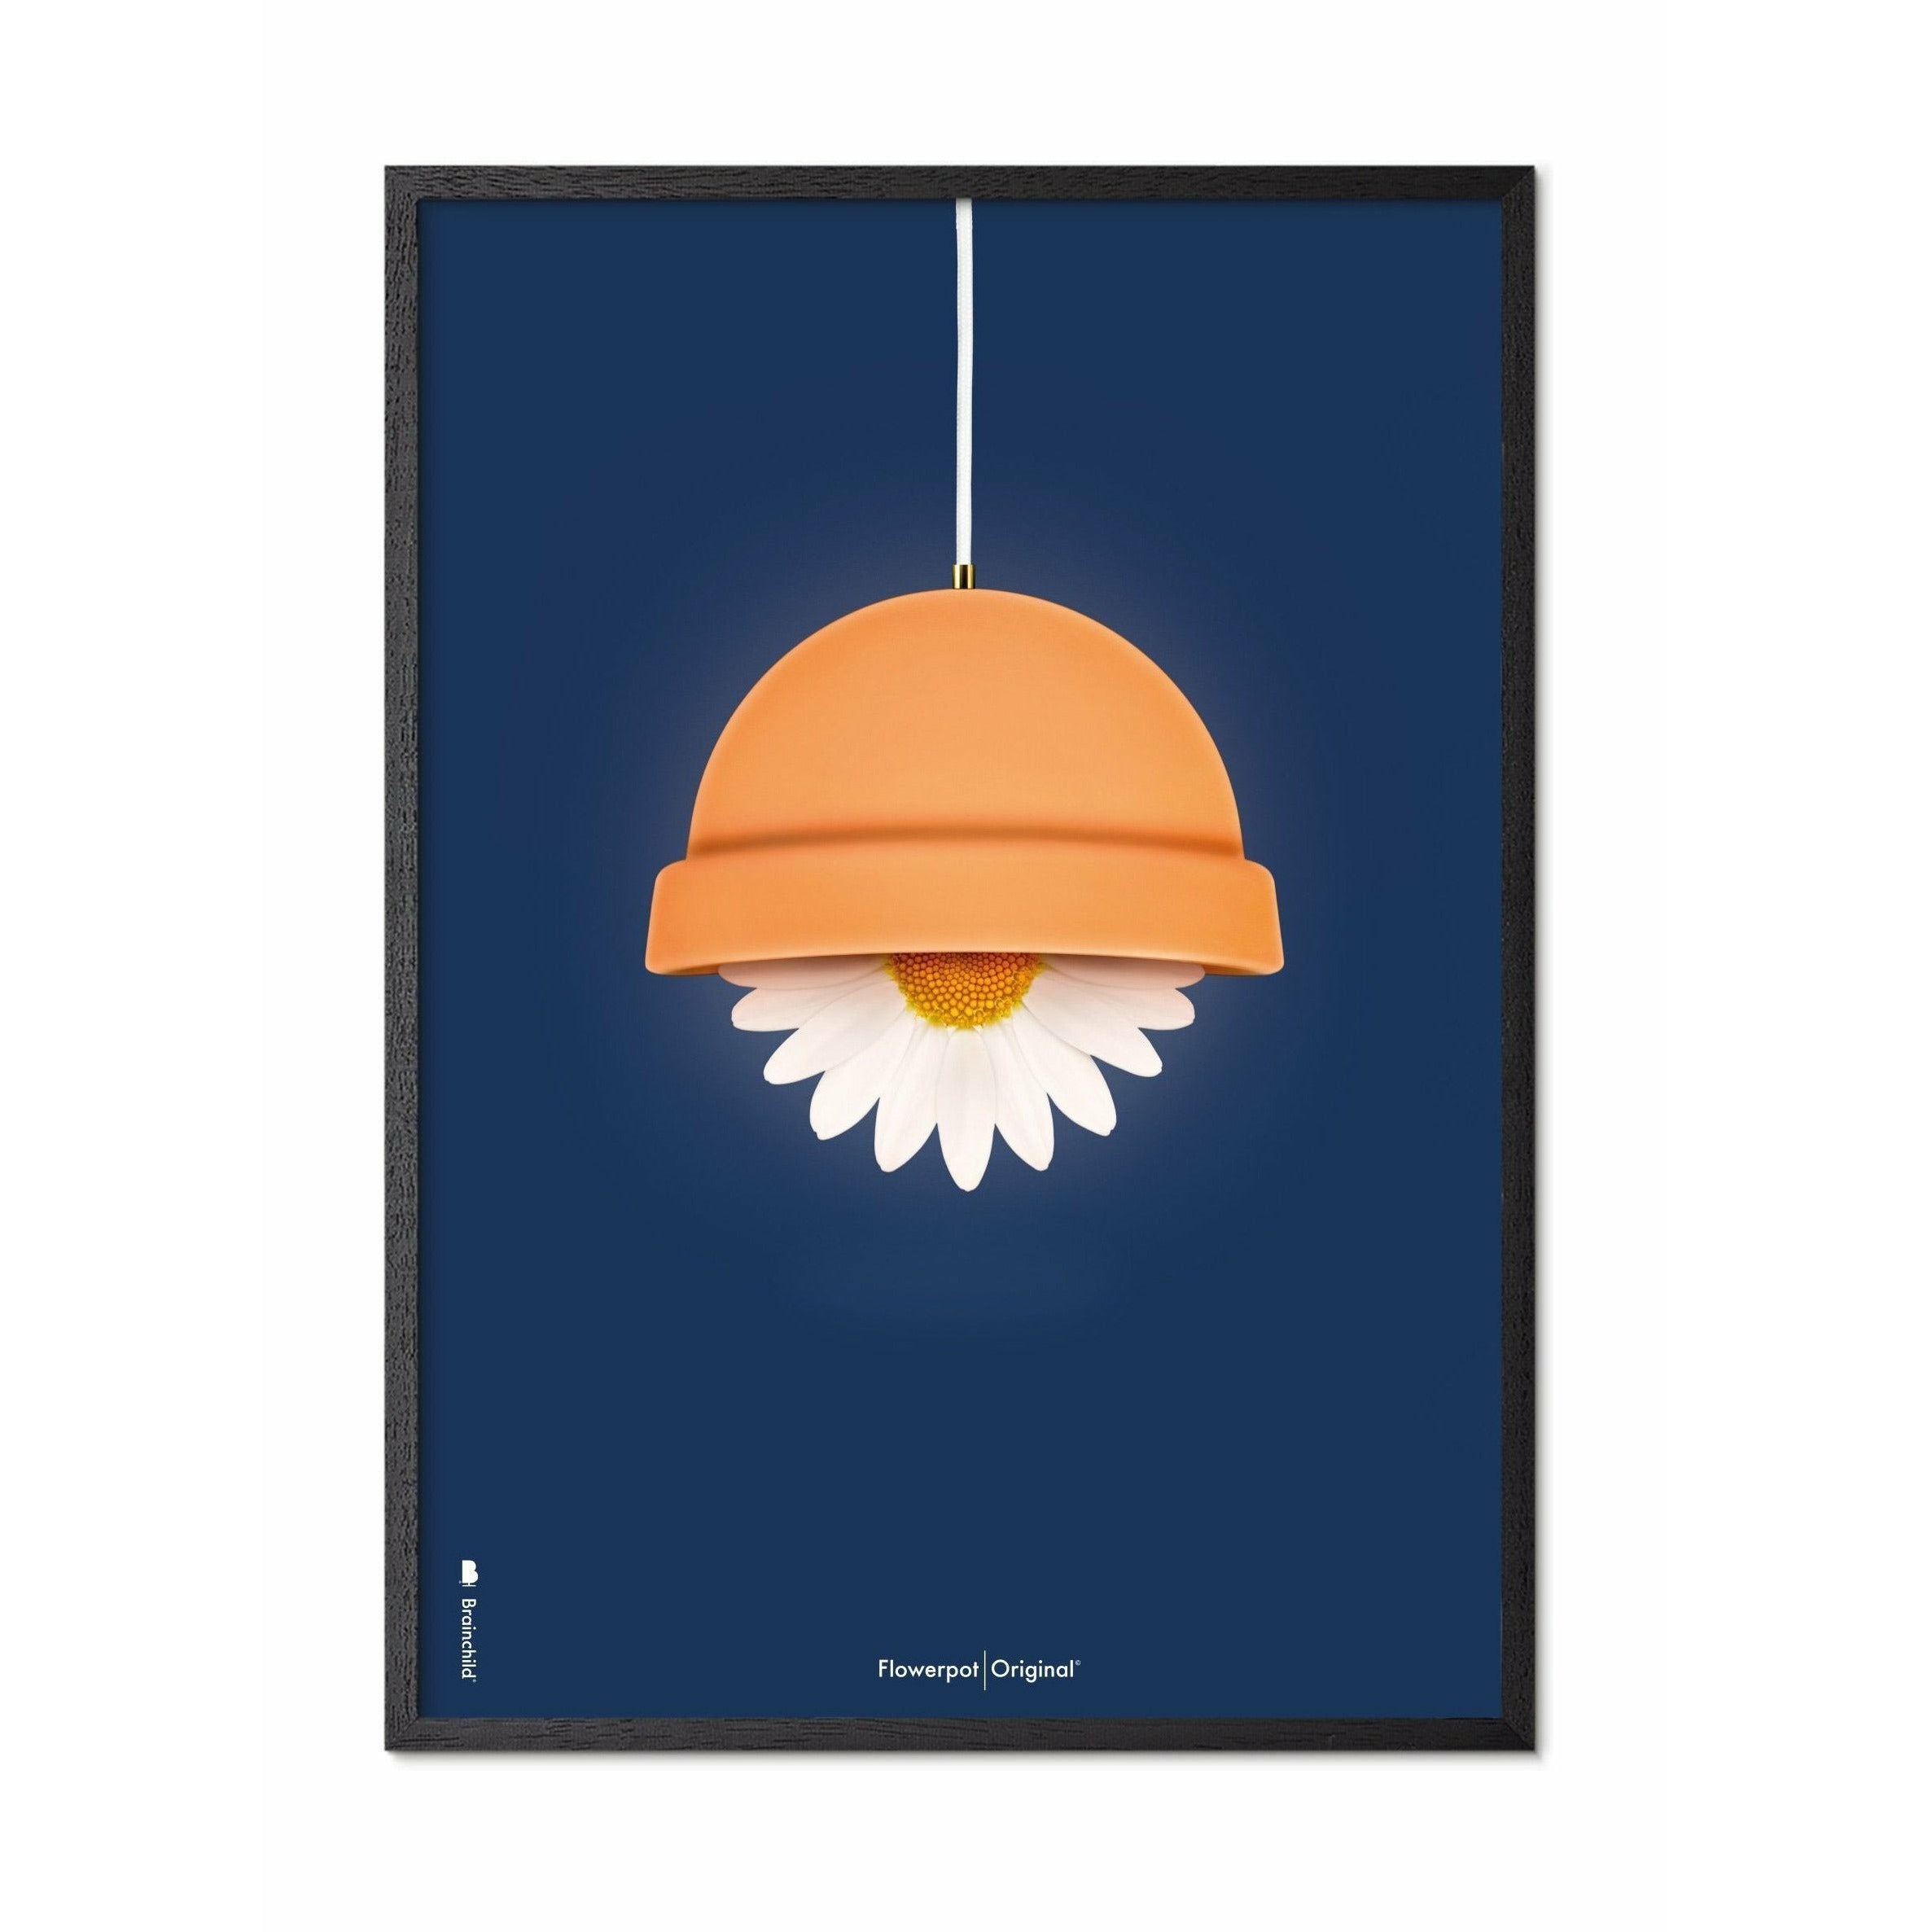 brainchild Poster classique de Flowerpot, cadre en bois laqué noir A5, fond bleu foncé